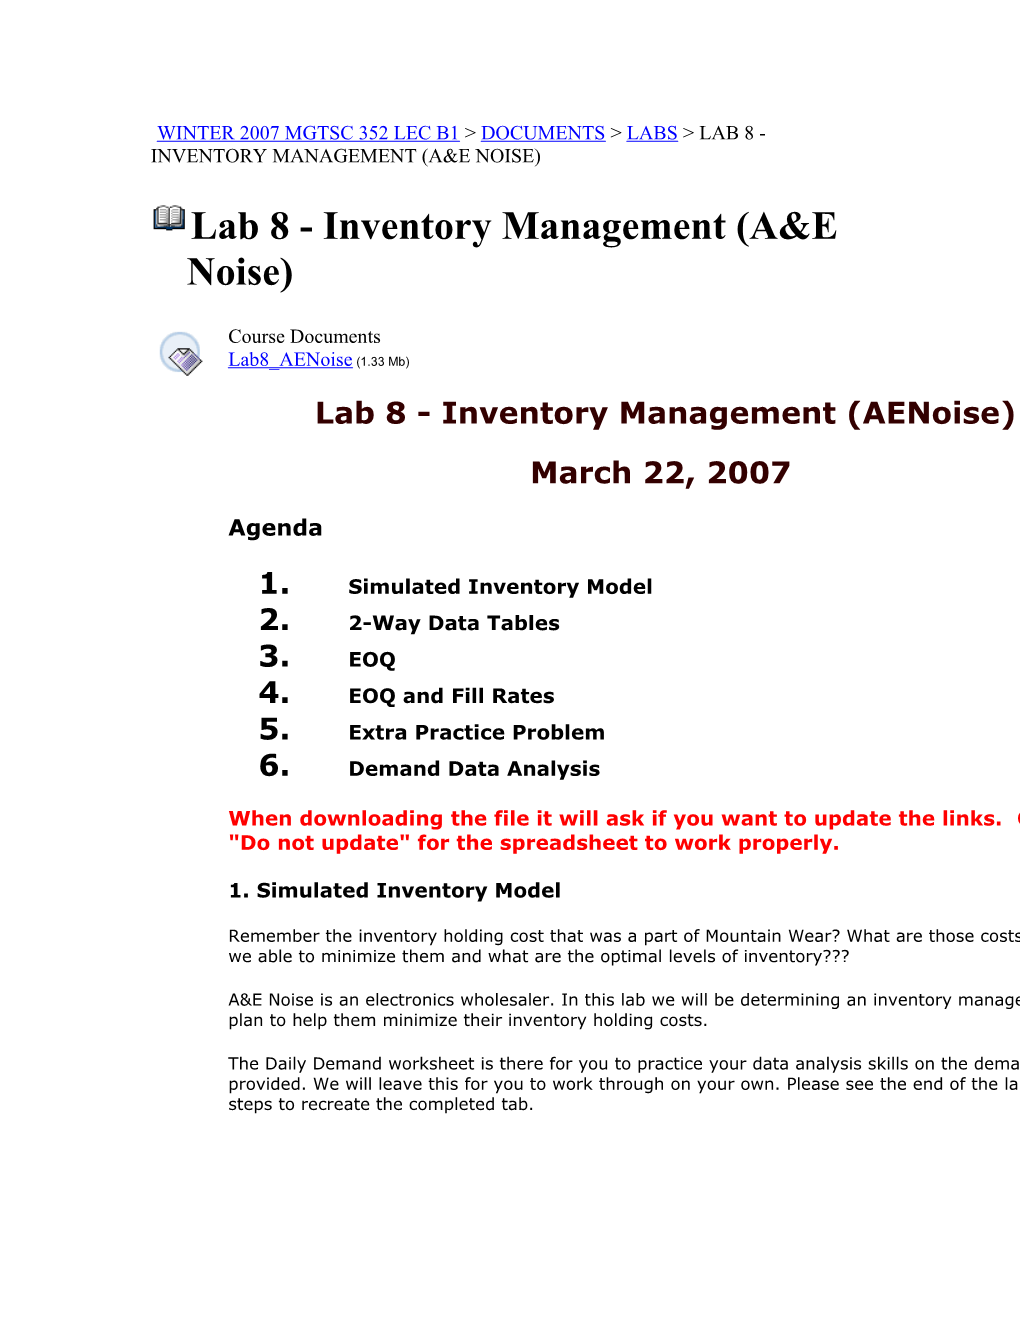 Lab 8 - Inventory Management (A&E Noise)